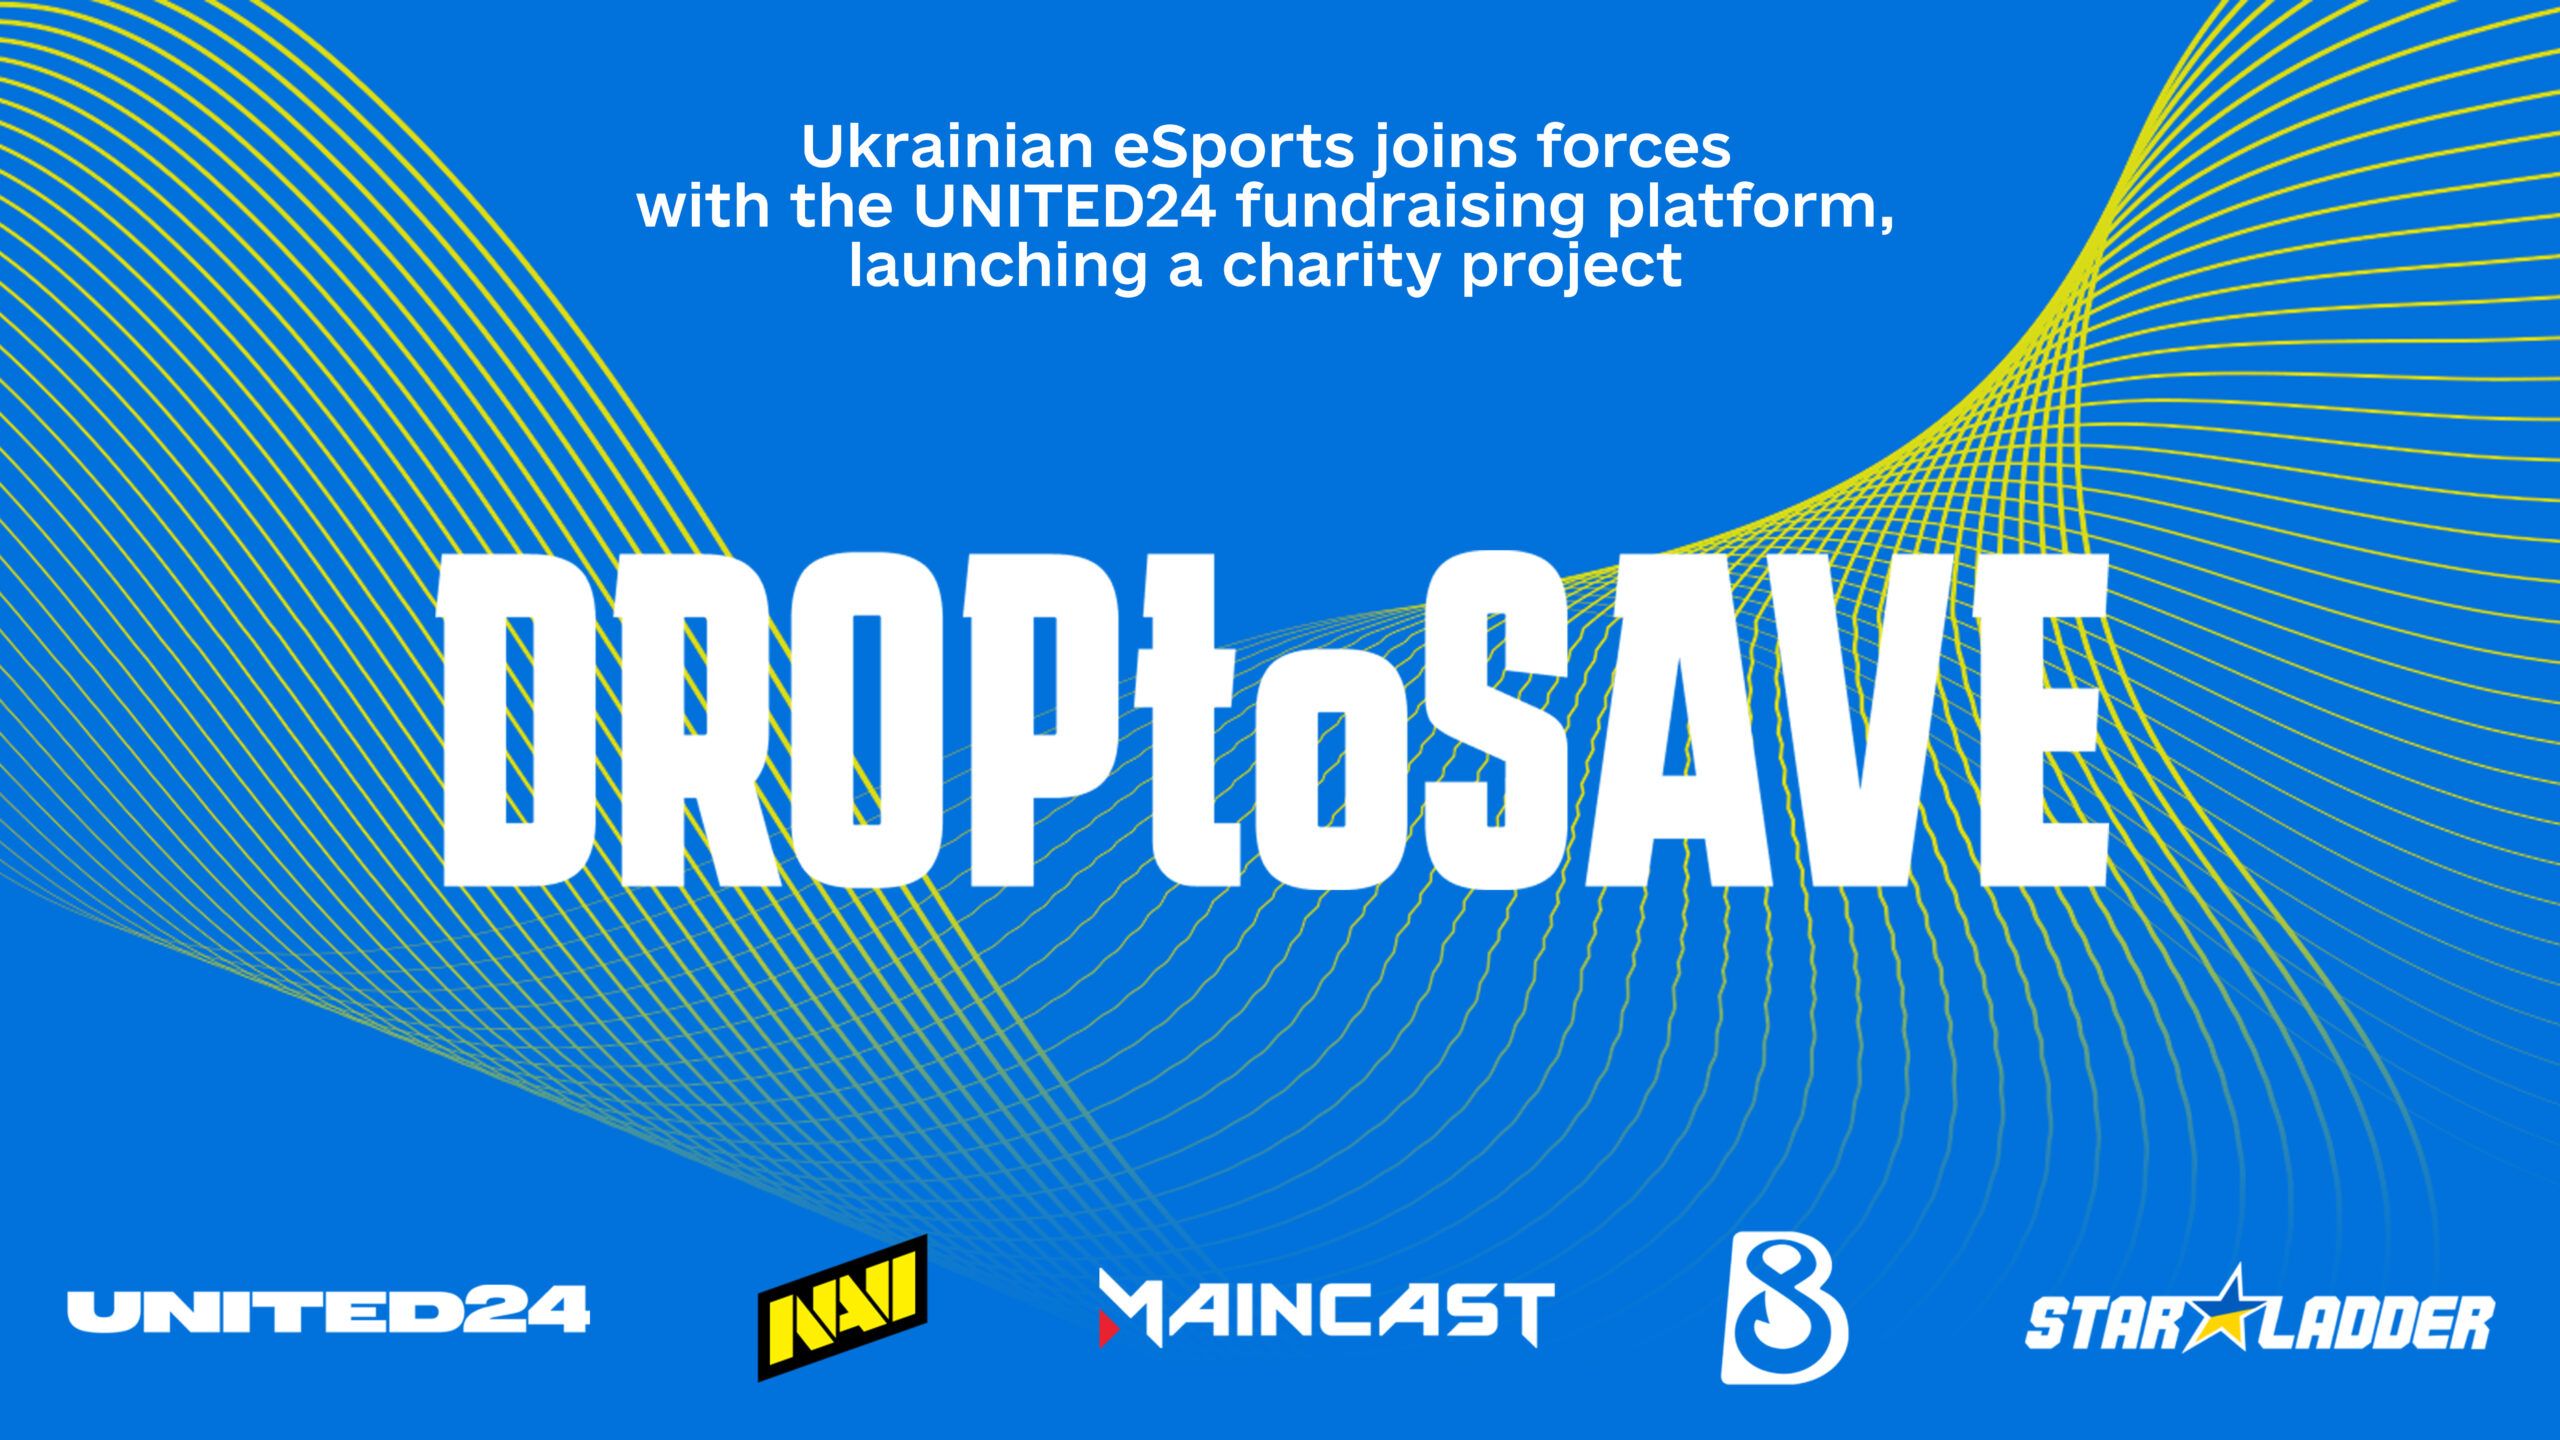 Ukrainian eSports Supports UNITED24